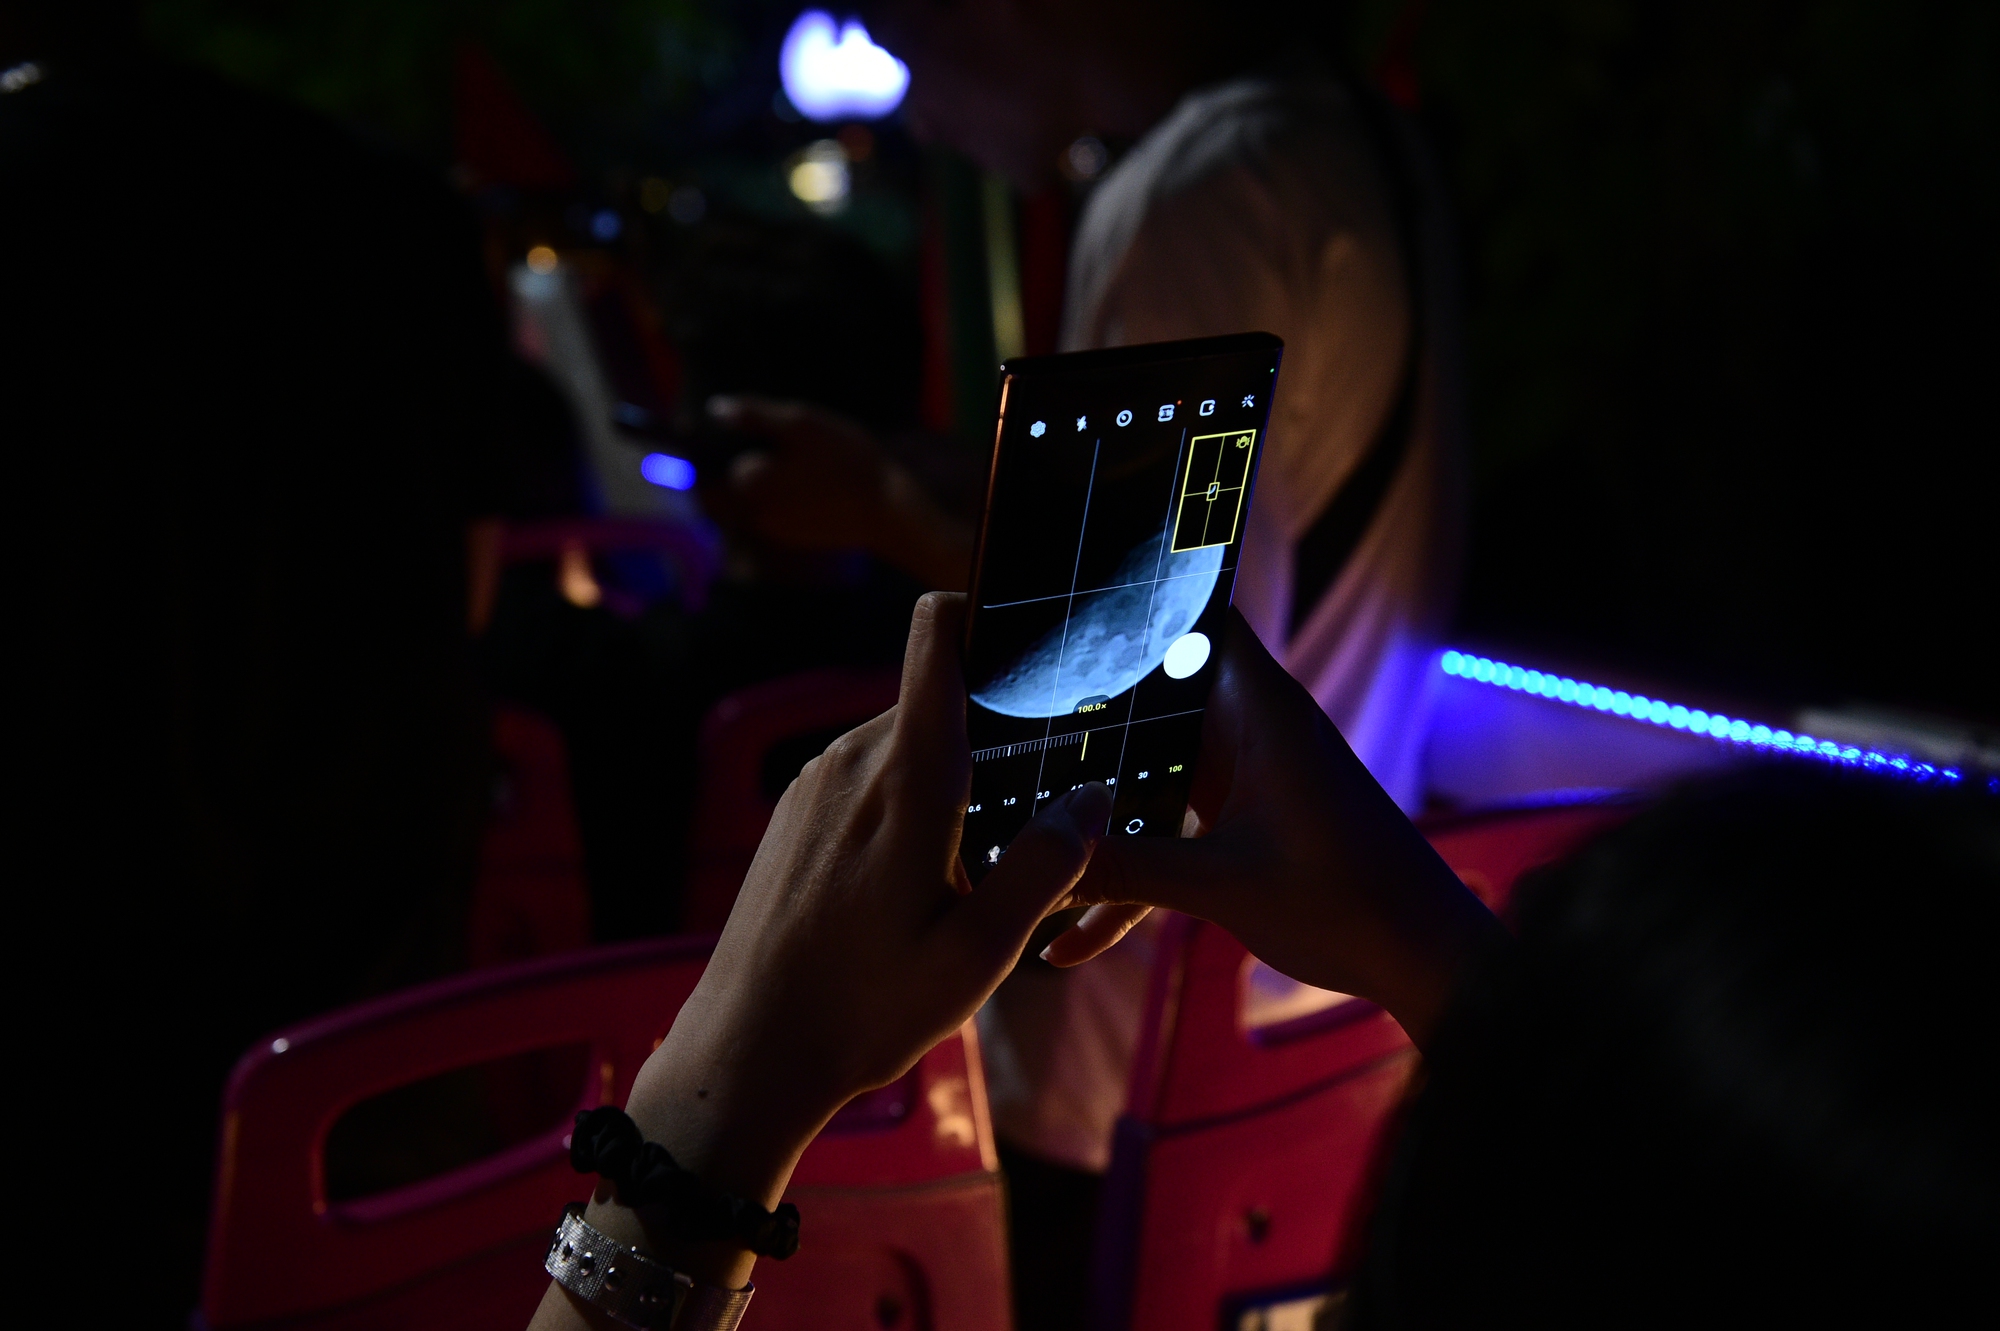 Trước thềm sự kiện, các chuyên gia công nghệ trông chờ gì về thế hệ Galaxy S mới - Ảnh 5.